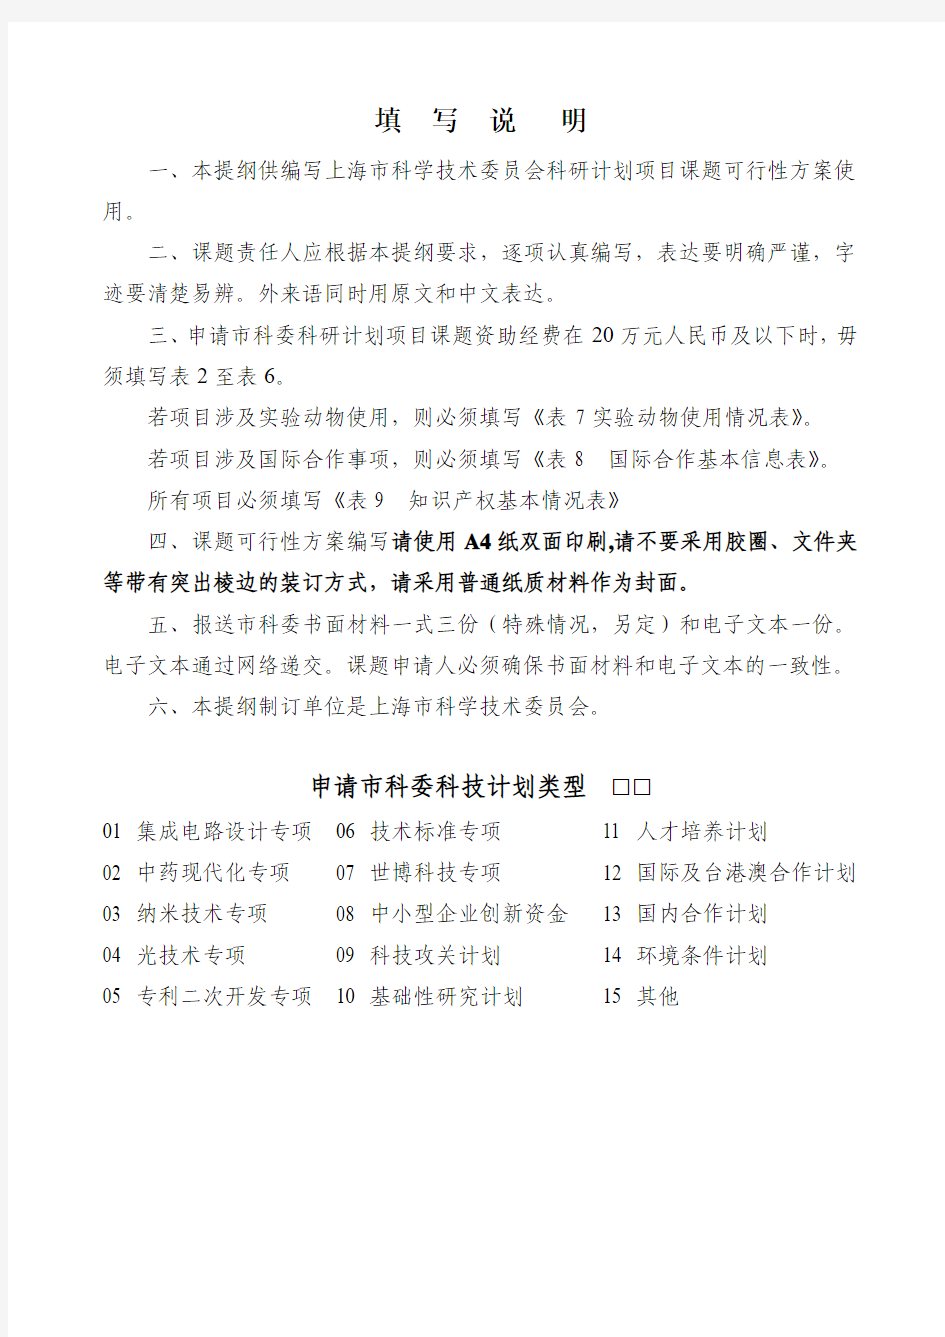 上海市科学技术委员会科研计划项目课题可行性方案(2012版)